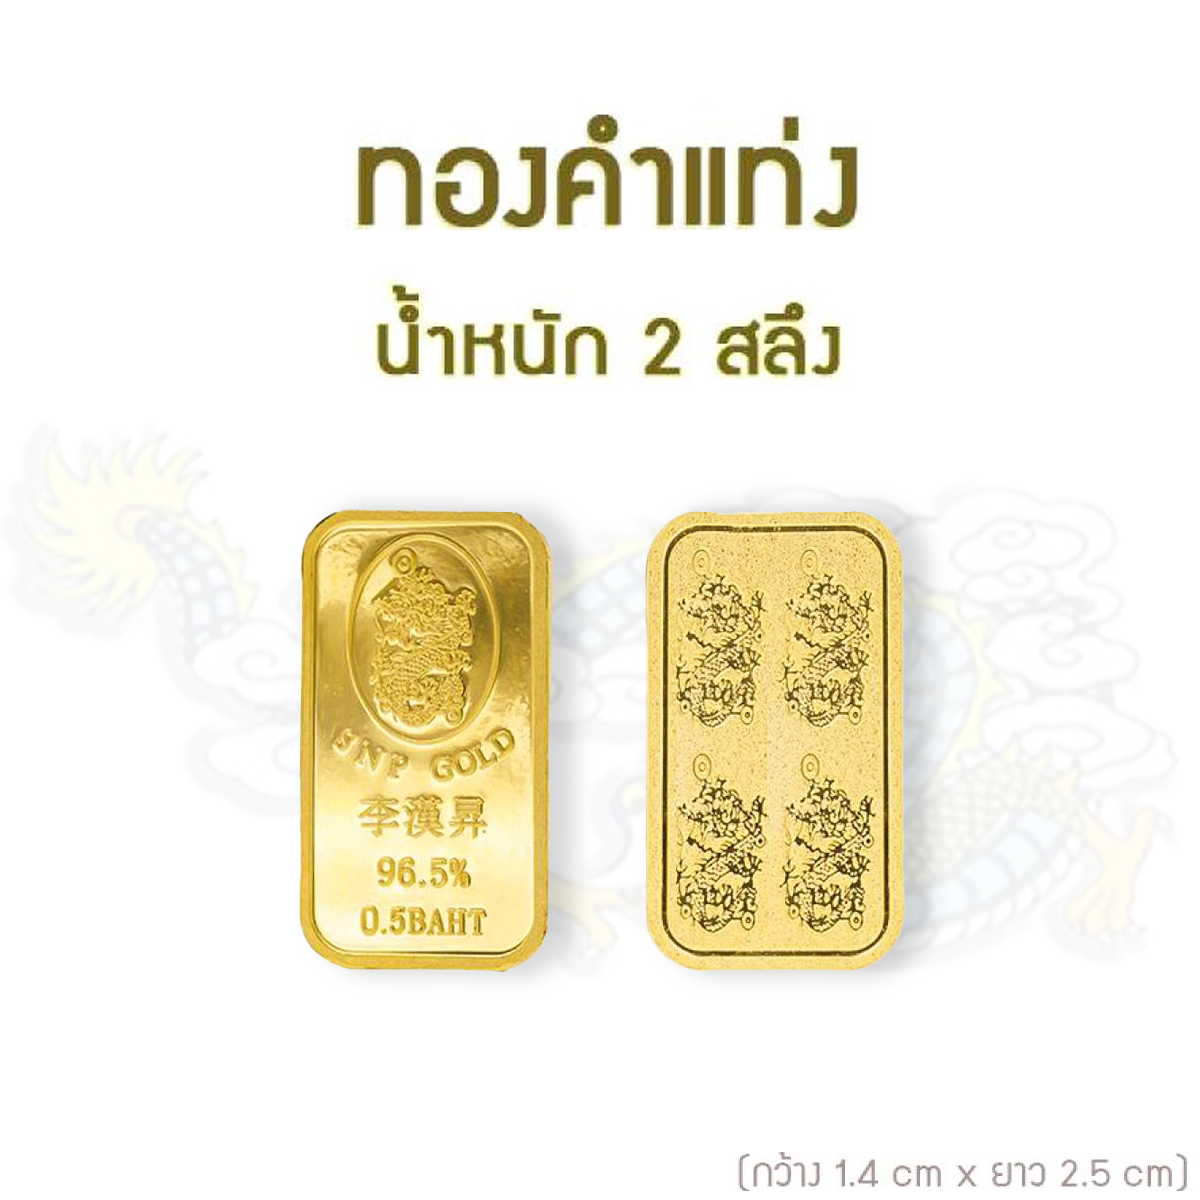 SSNP GOLD 7 ทองคำแท่งแท้ 96.5% น้ำหนัก 2 สลึง  พร้อมใบรับประกันทอง